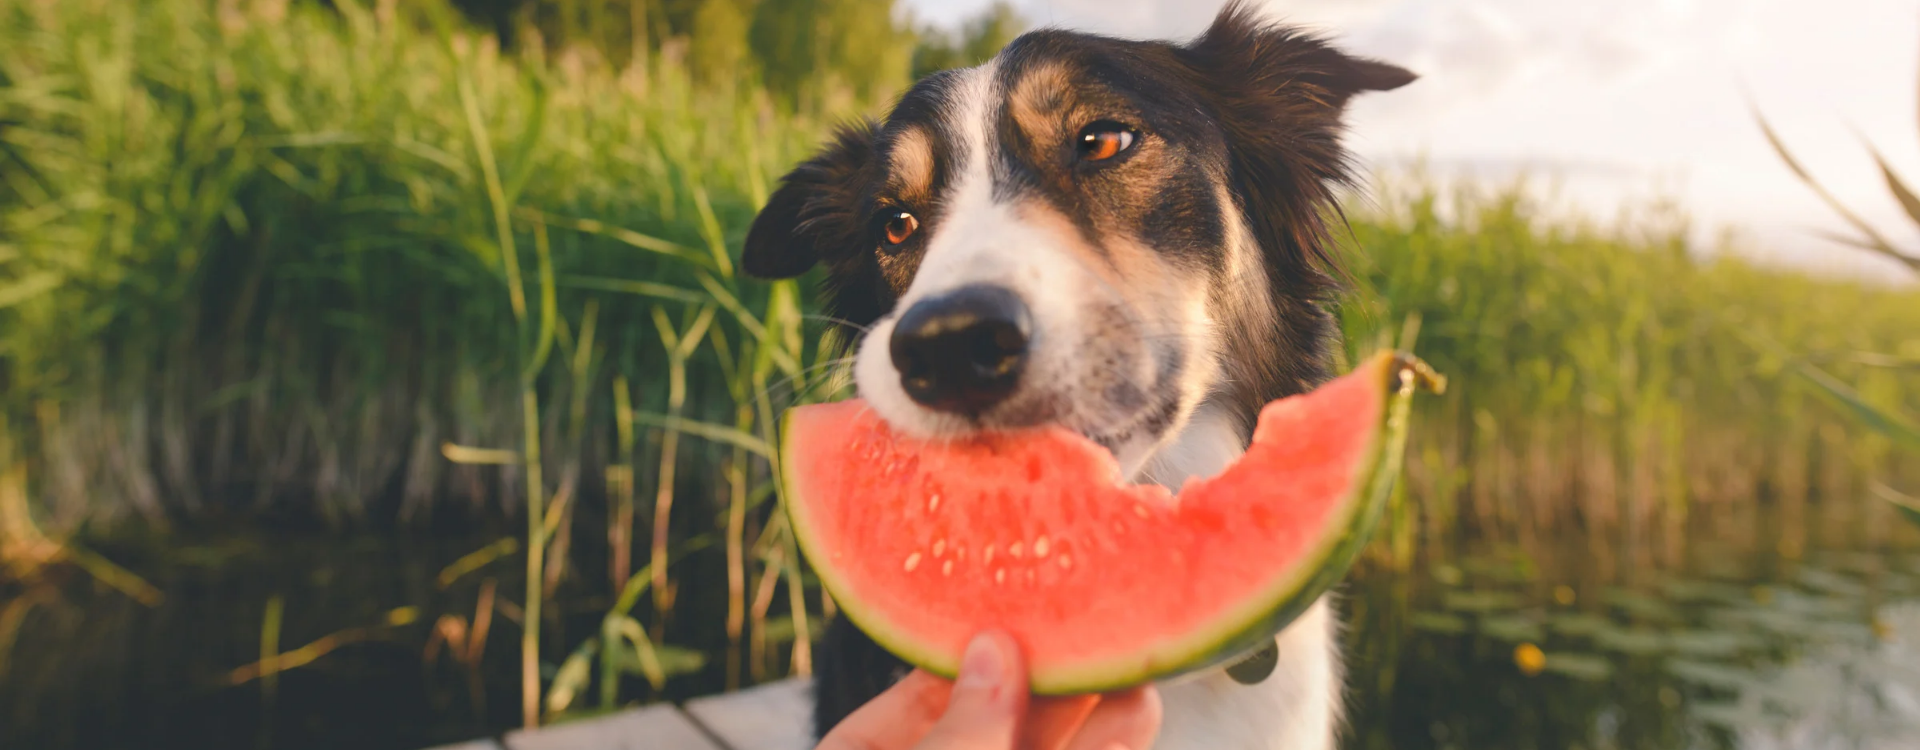 11 καλοκαιρινά τρόφιμα που δεν πρέπει ποτέ να μοιραστείτε με το σκύλο σας και 5 που μπορείτε